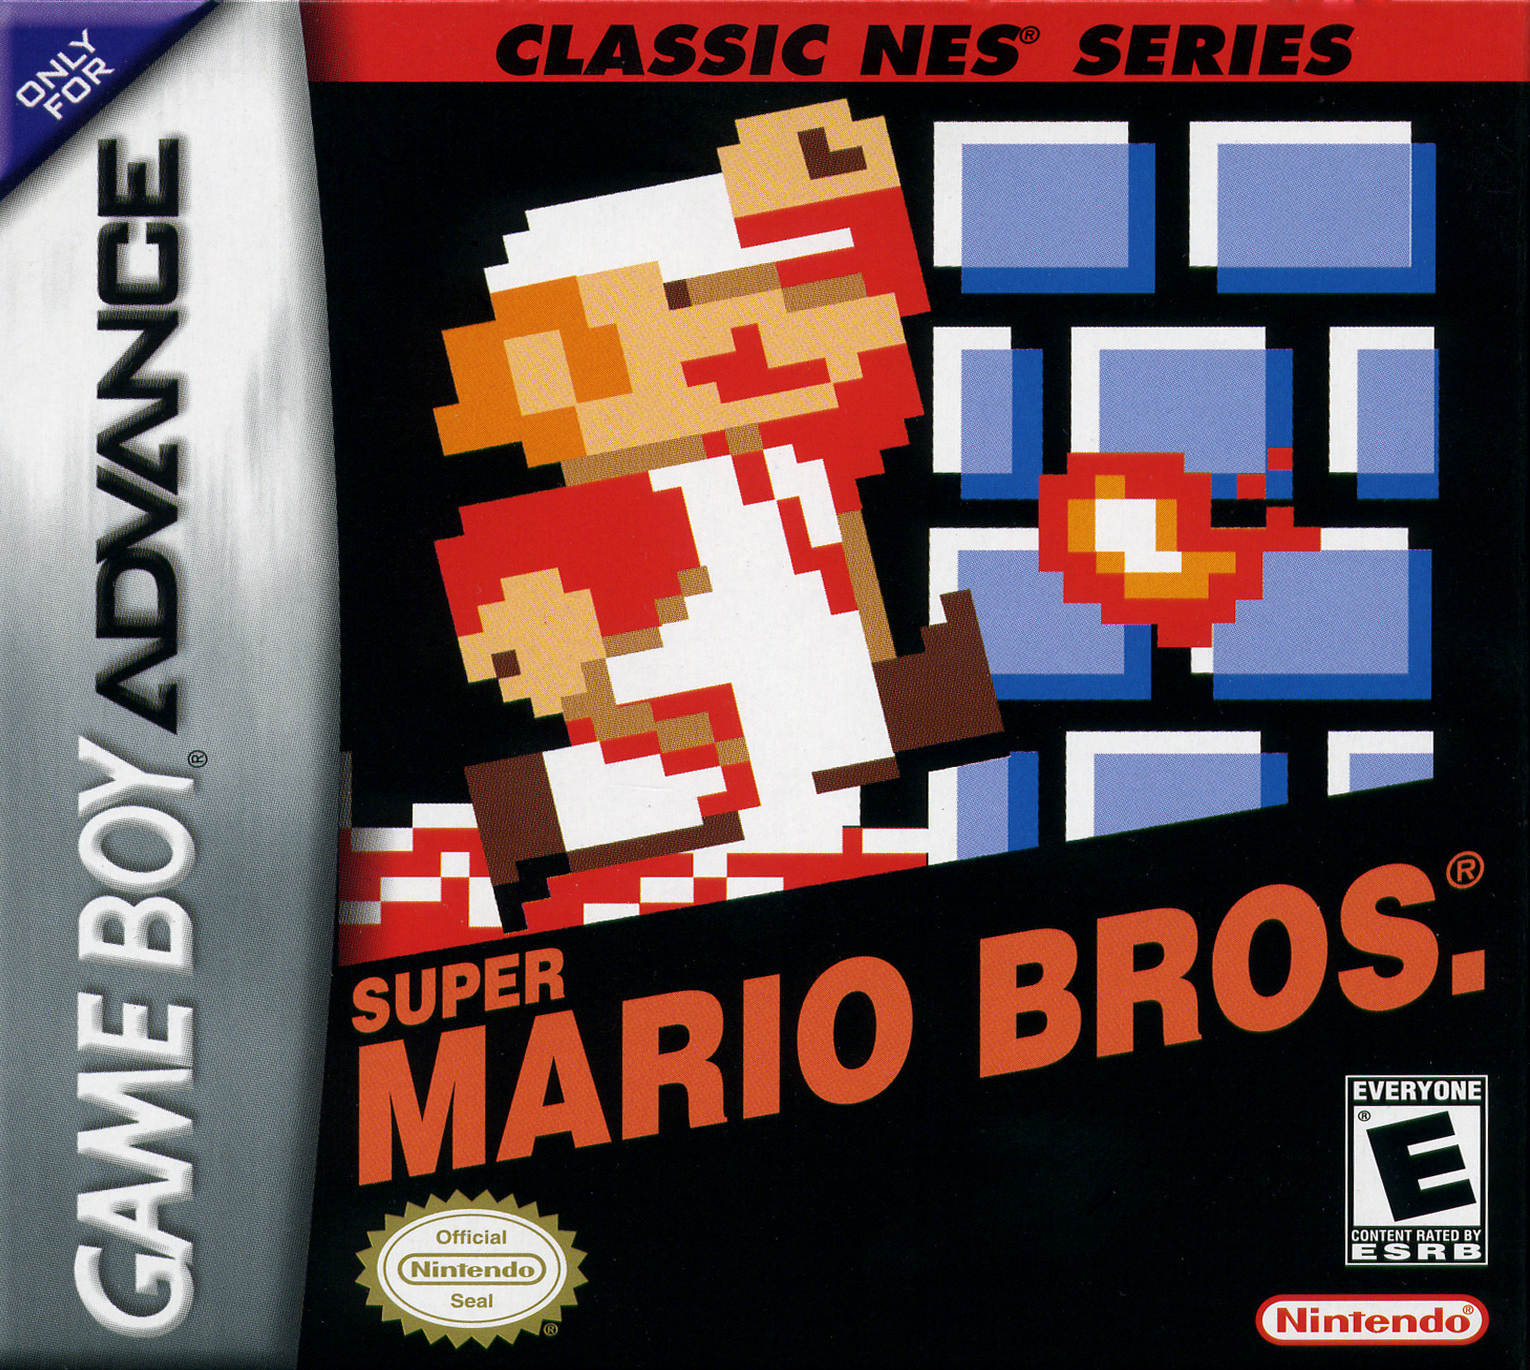 Classic Nes Series Super Mario Bros Details Launchbox Games Database